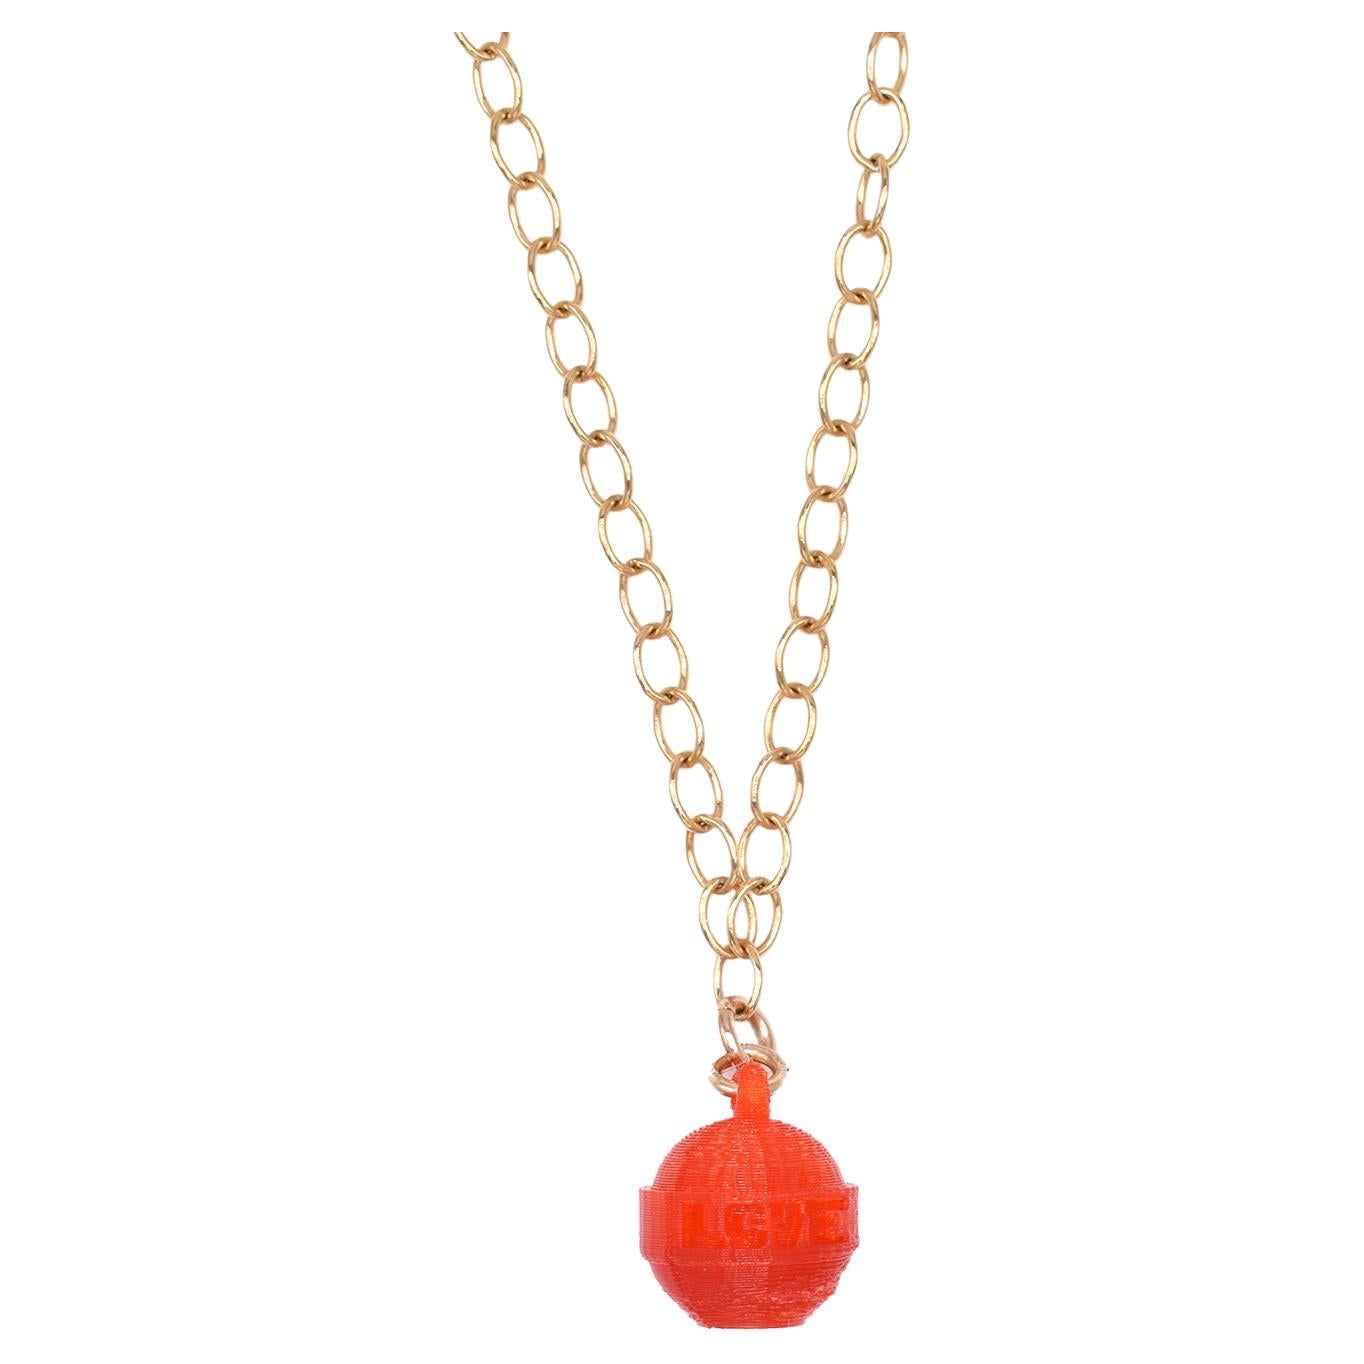 3d Printed Dum Dum 4 Love Lollipop Style Necklace - Cherry For Sale